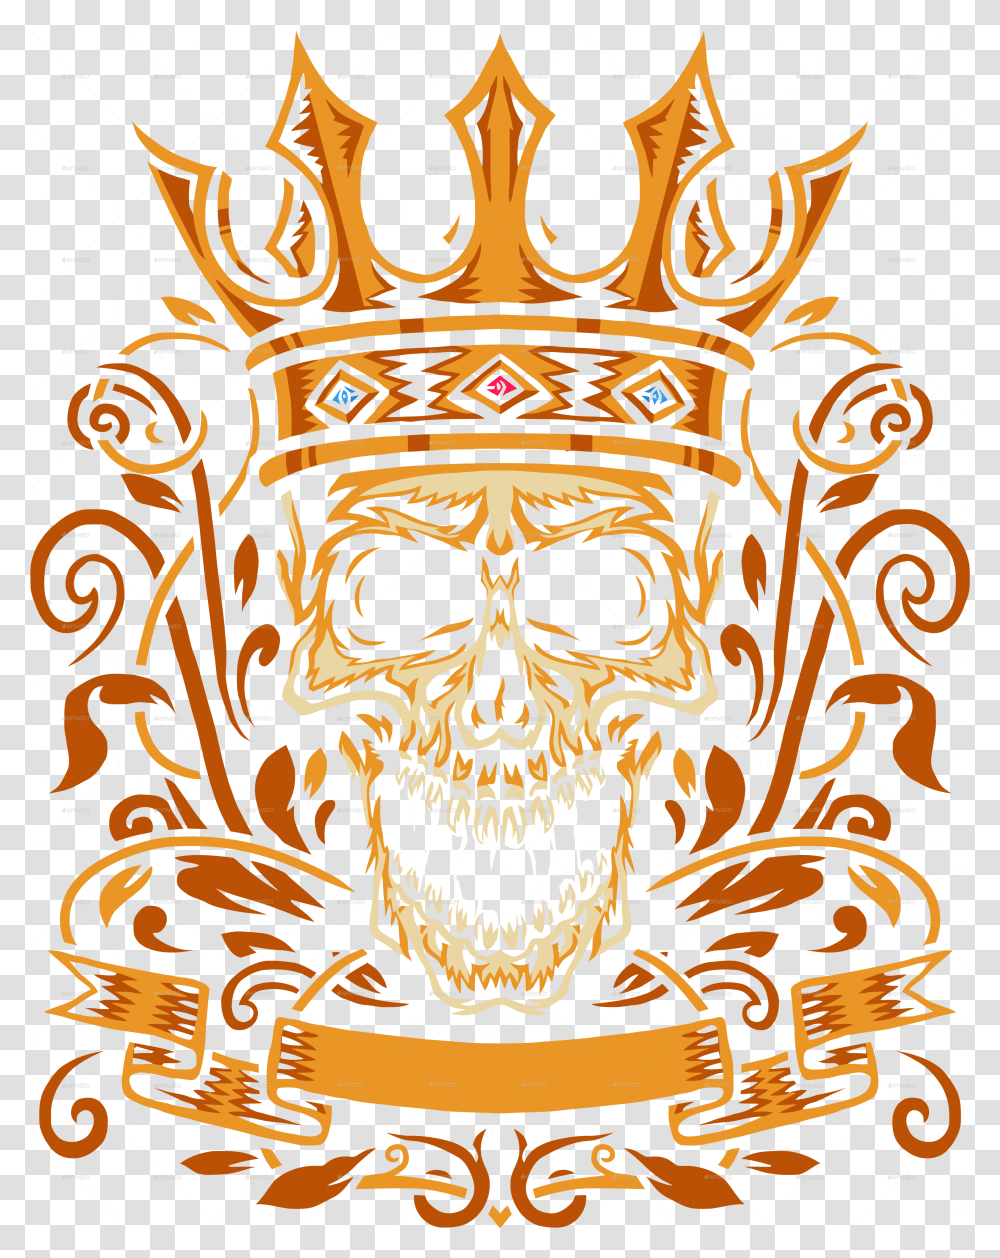 Skull With King Crown Illustration, Symbol, Emblem, Architecture, Building Transparent Png